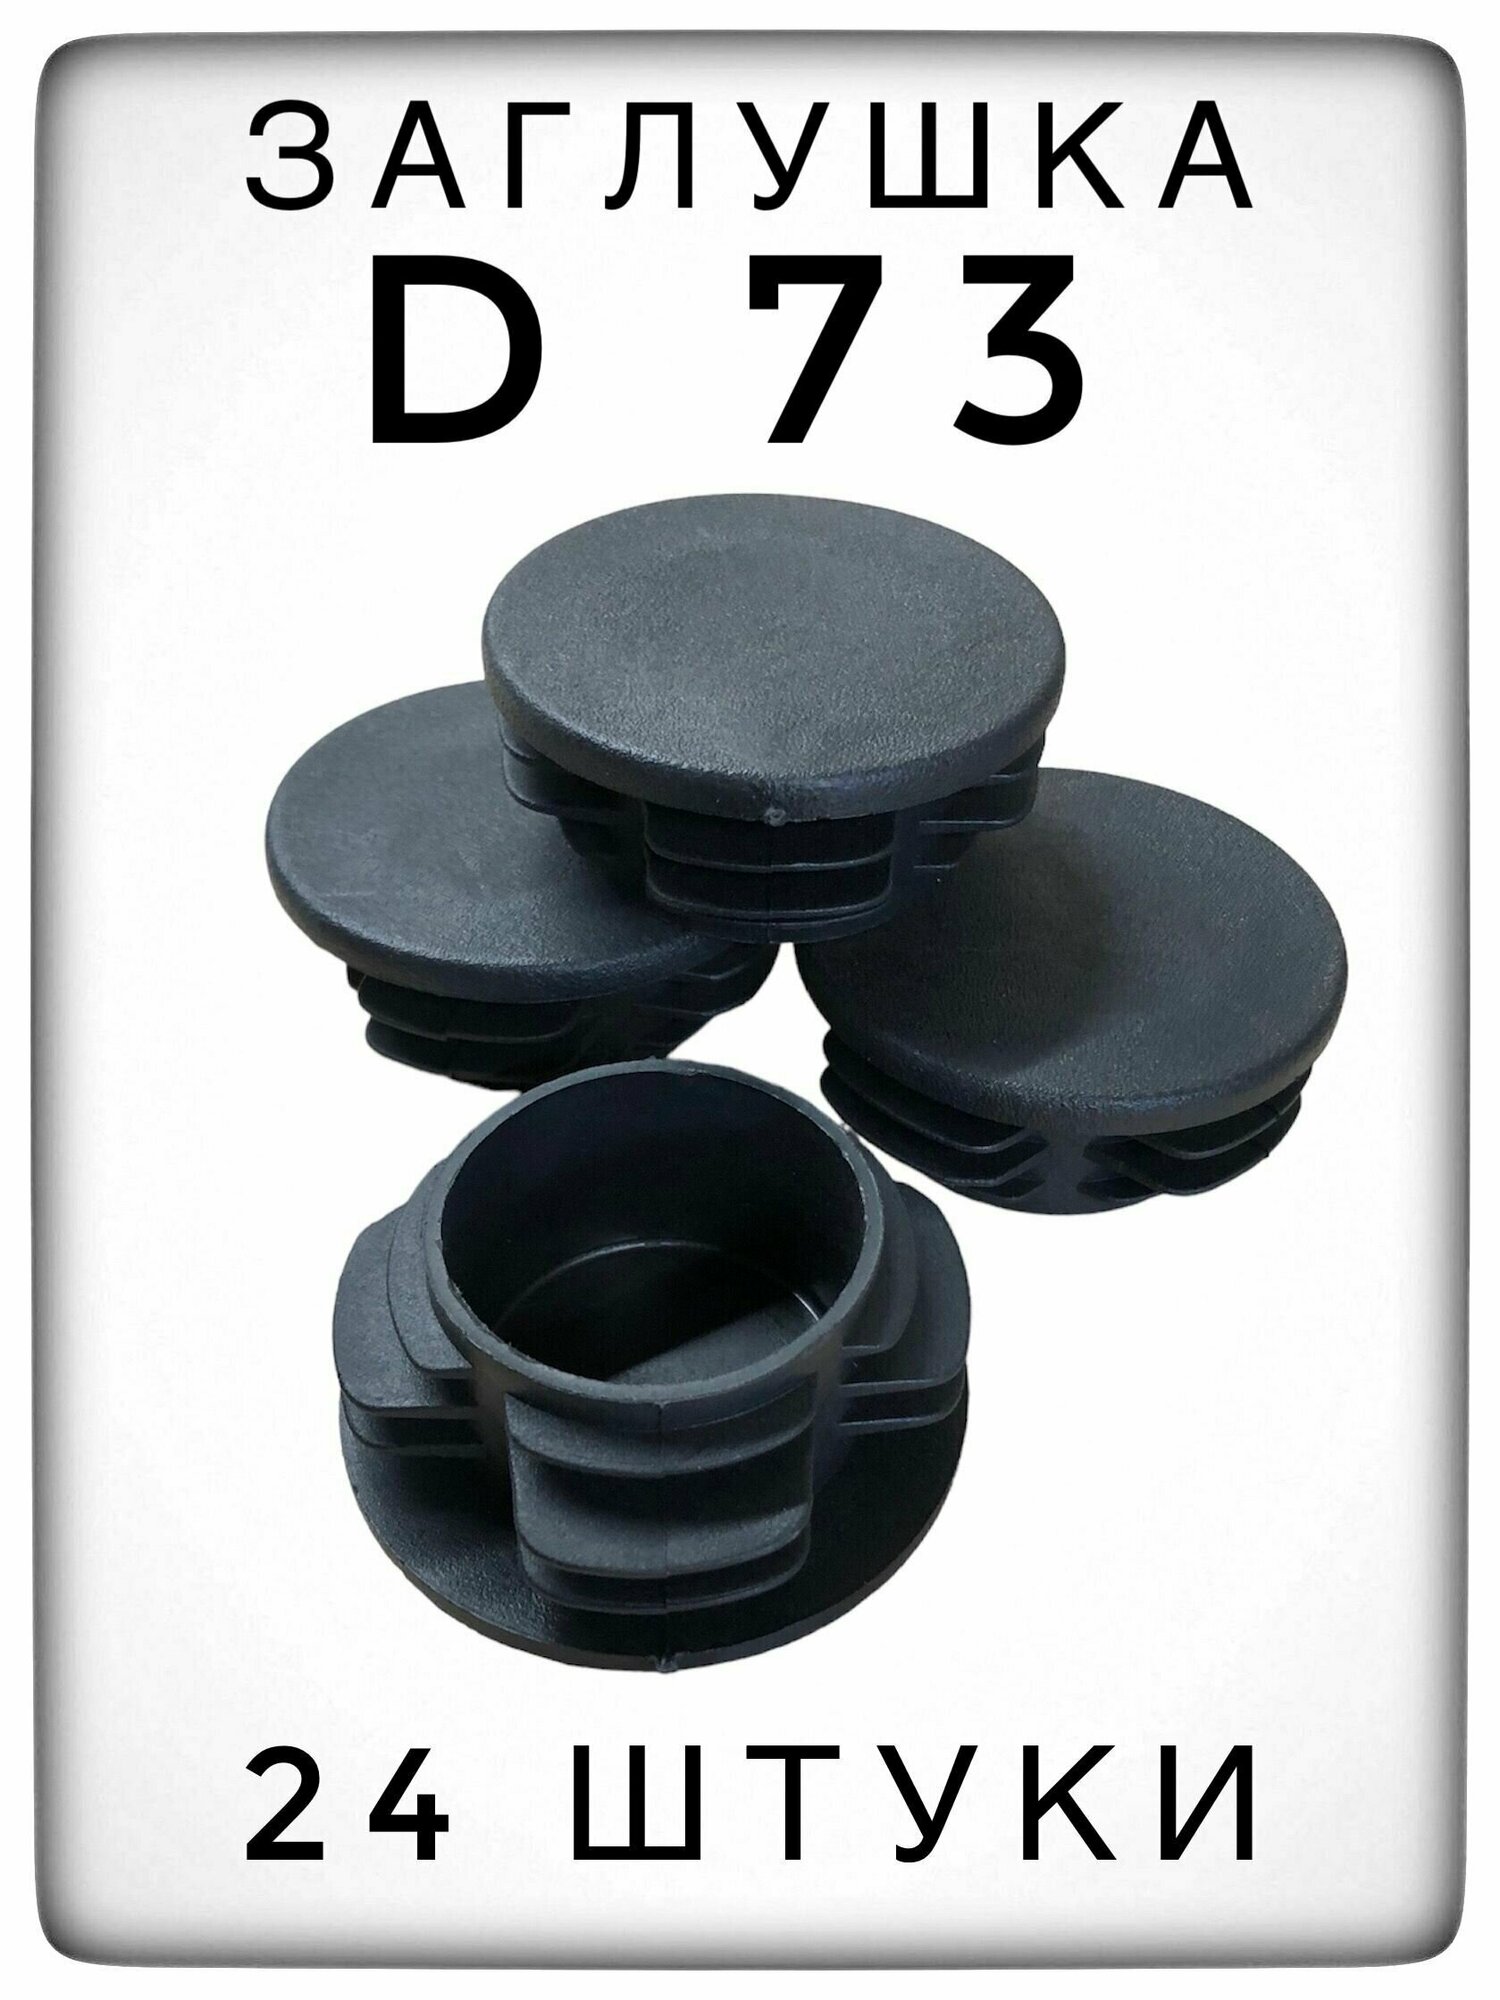 Заглушка Д73 (24 штуки) пластиковая для металлической трубы НКТ